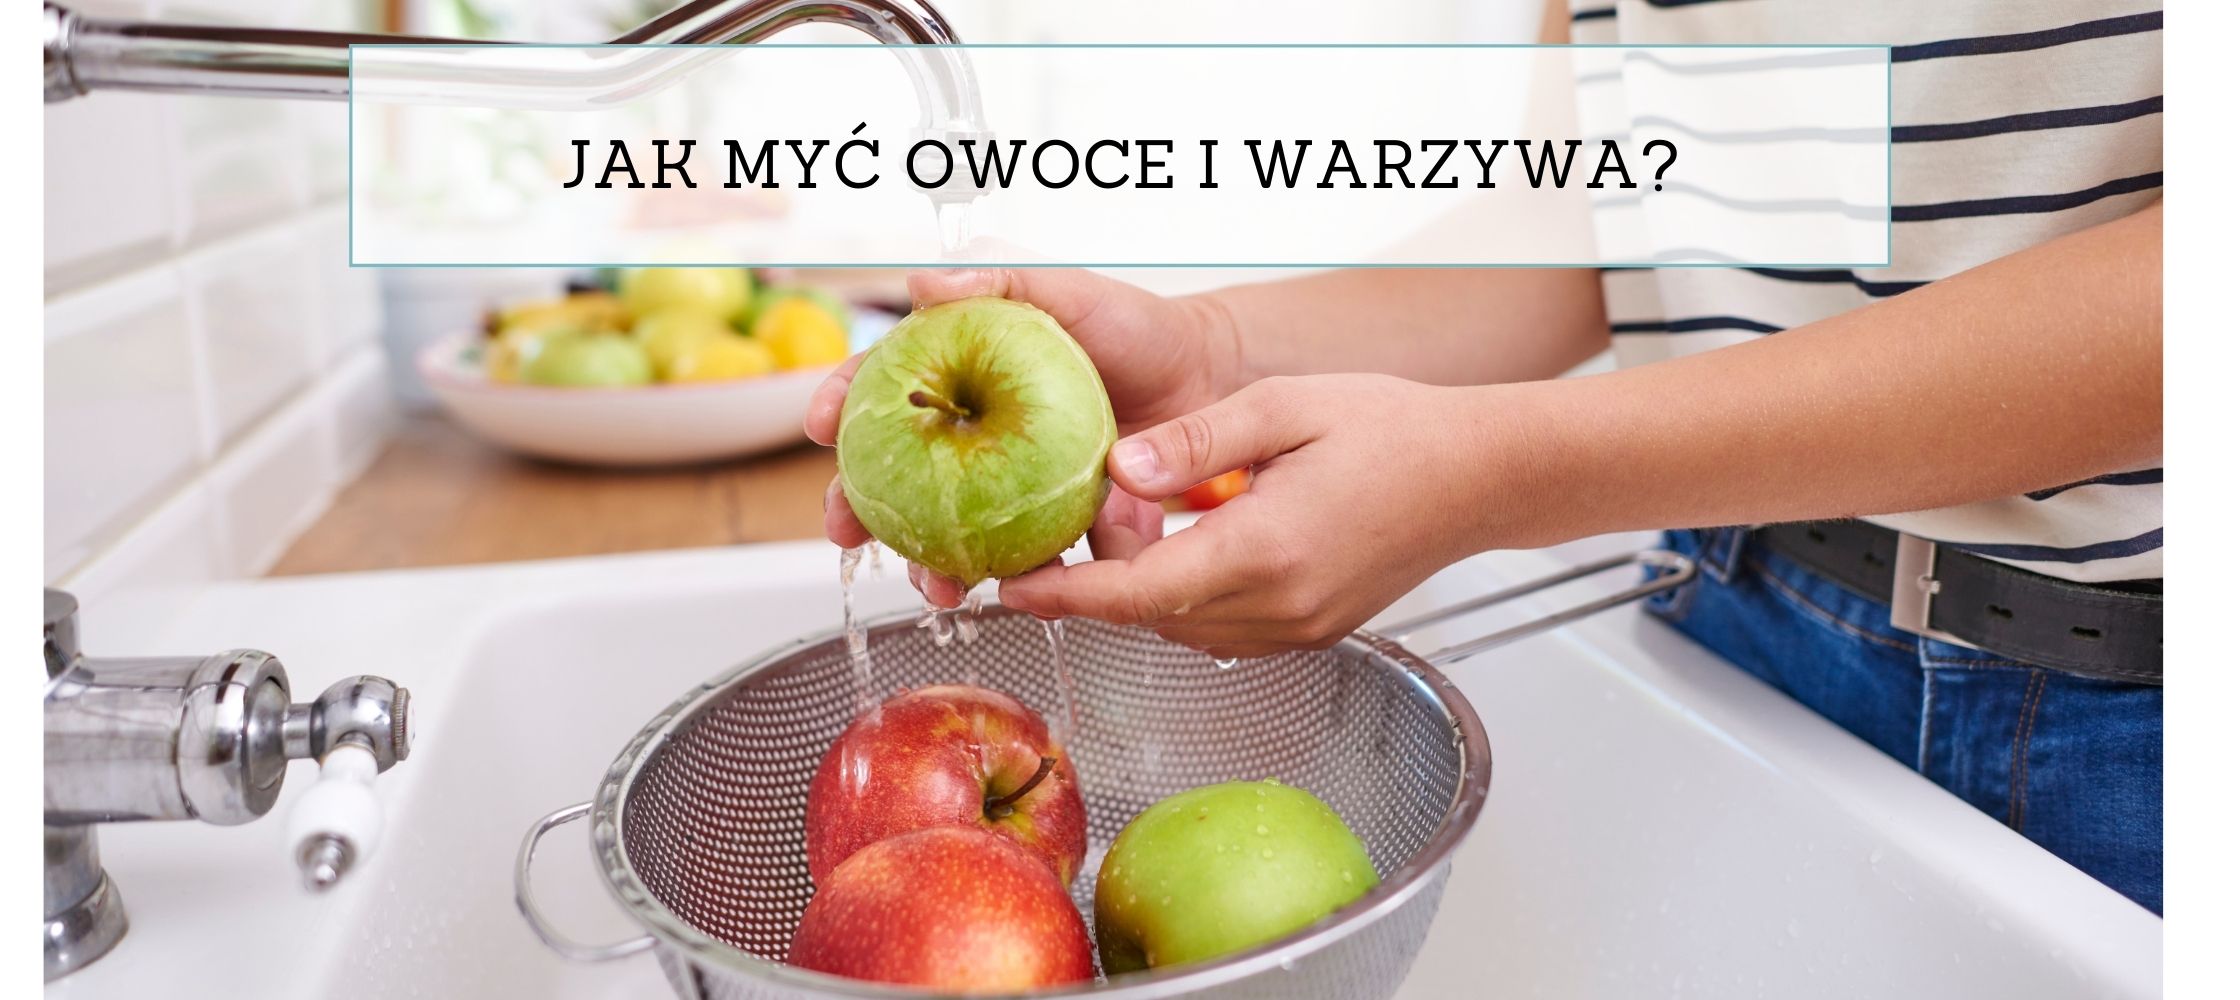 Jak myć owoce i warzywa? – Czy robisz to prawidłowo?